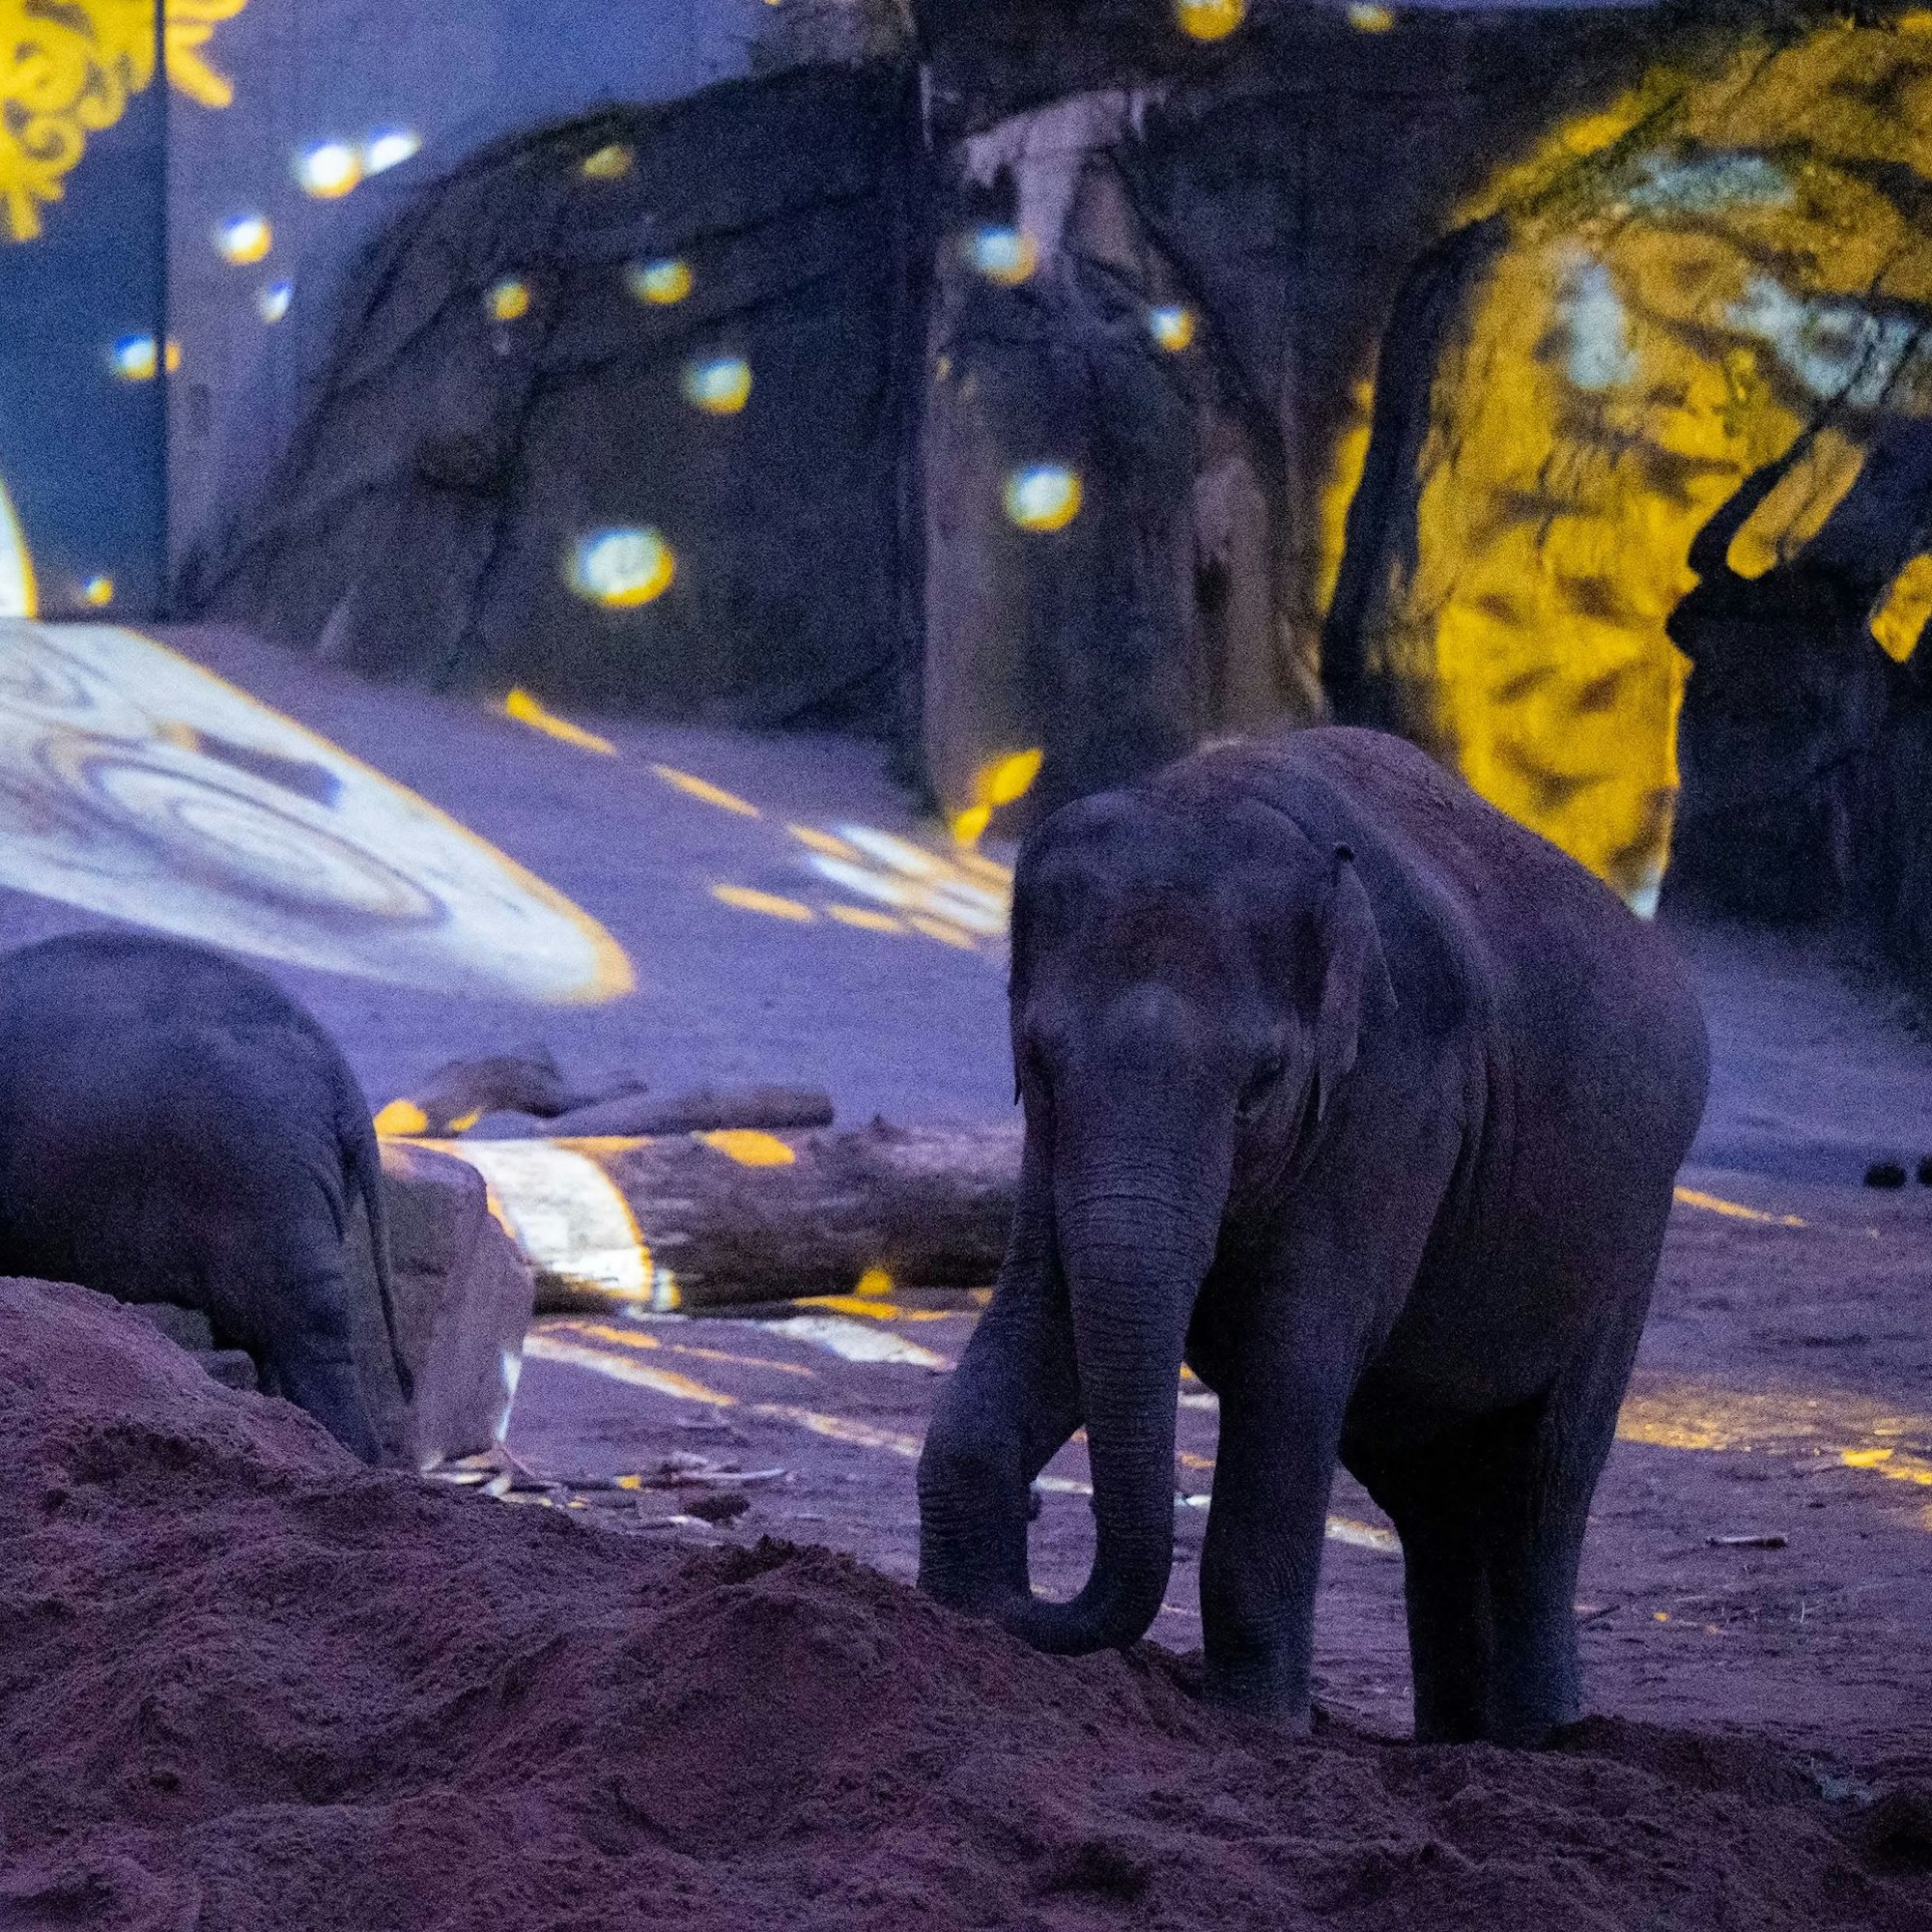 Den Tieren im Kölner Zoo macht das Lichterfest nichts aus. Sie können sich jederzeit zurückziehen.